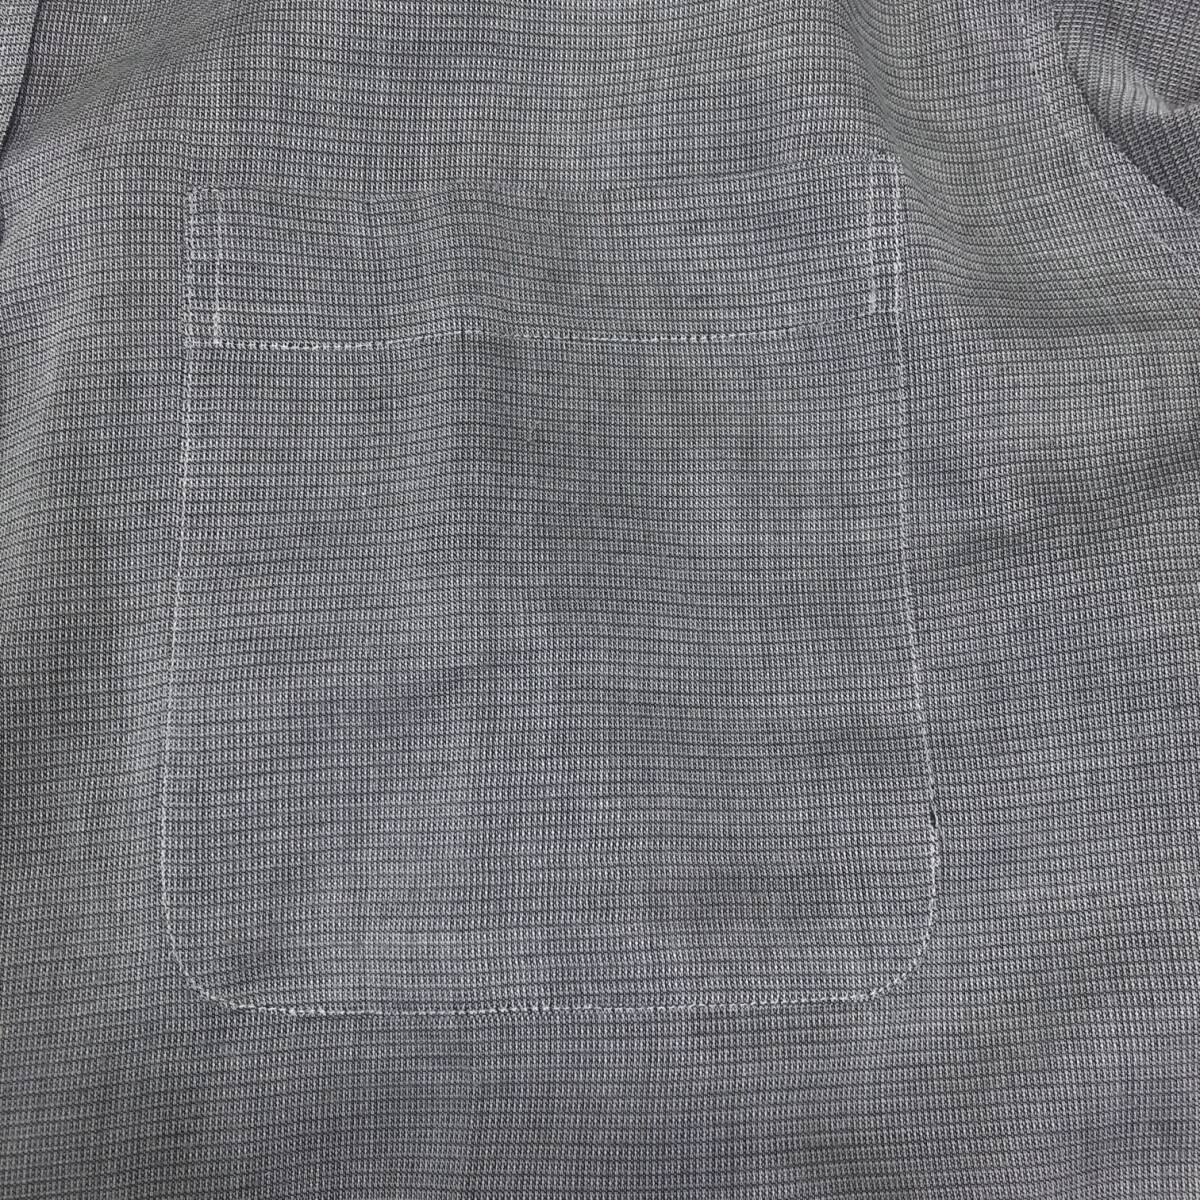 Y0936 D'URBAN ダーバン メンズ トップス シャツ 薄手 グレー 灰 綿素材含 麻素材含 オフィスカジュアル オフィススタイリッシュルック _画像8